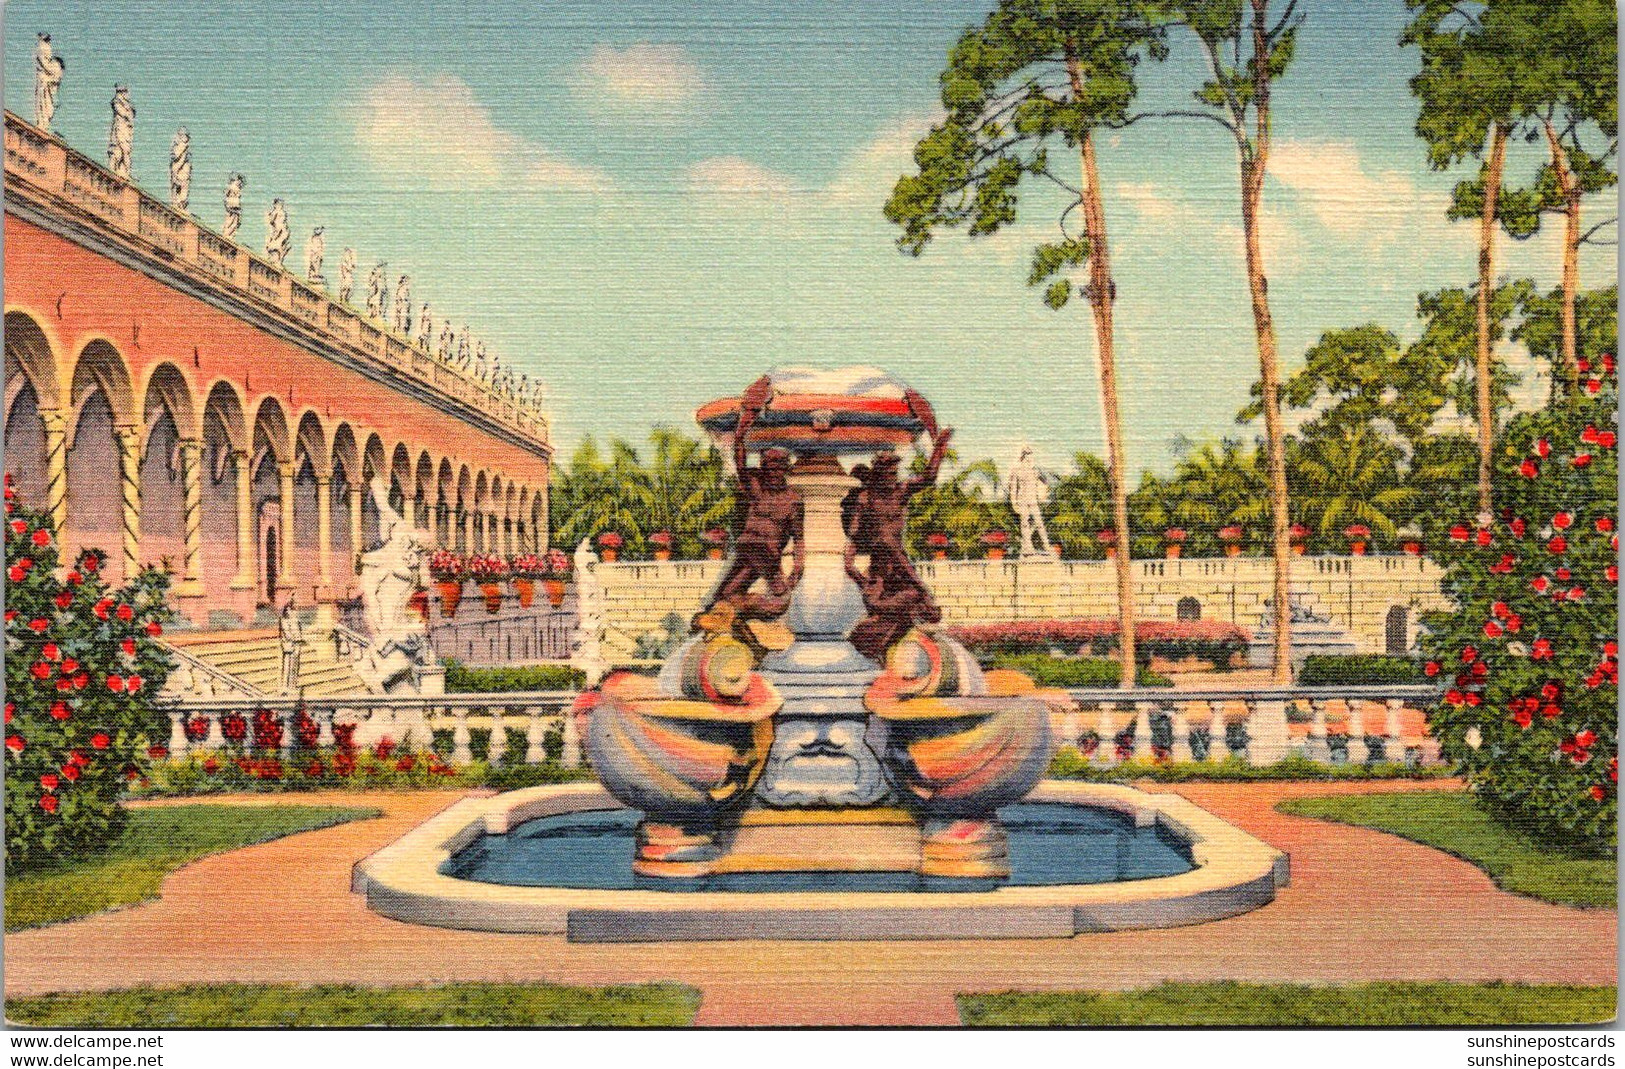 Florida Sarasota Ringling Art Museum Famous Fountain Of Turtles Curteich - Sarasota